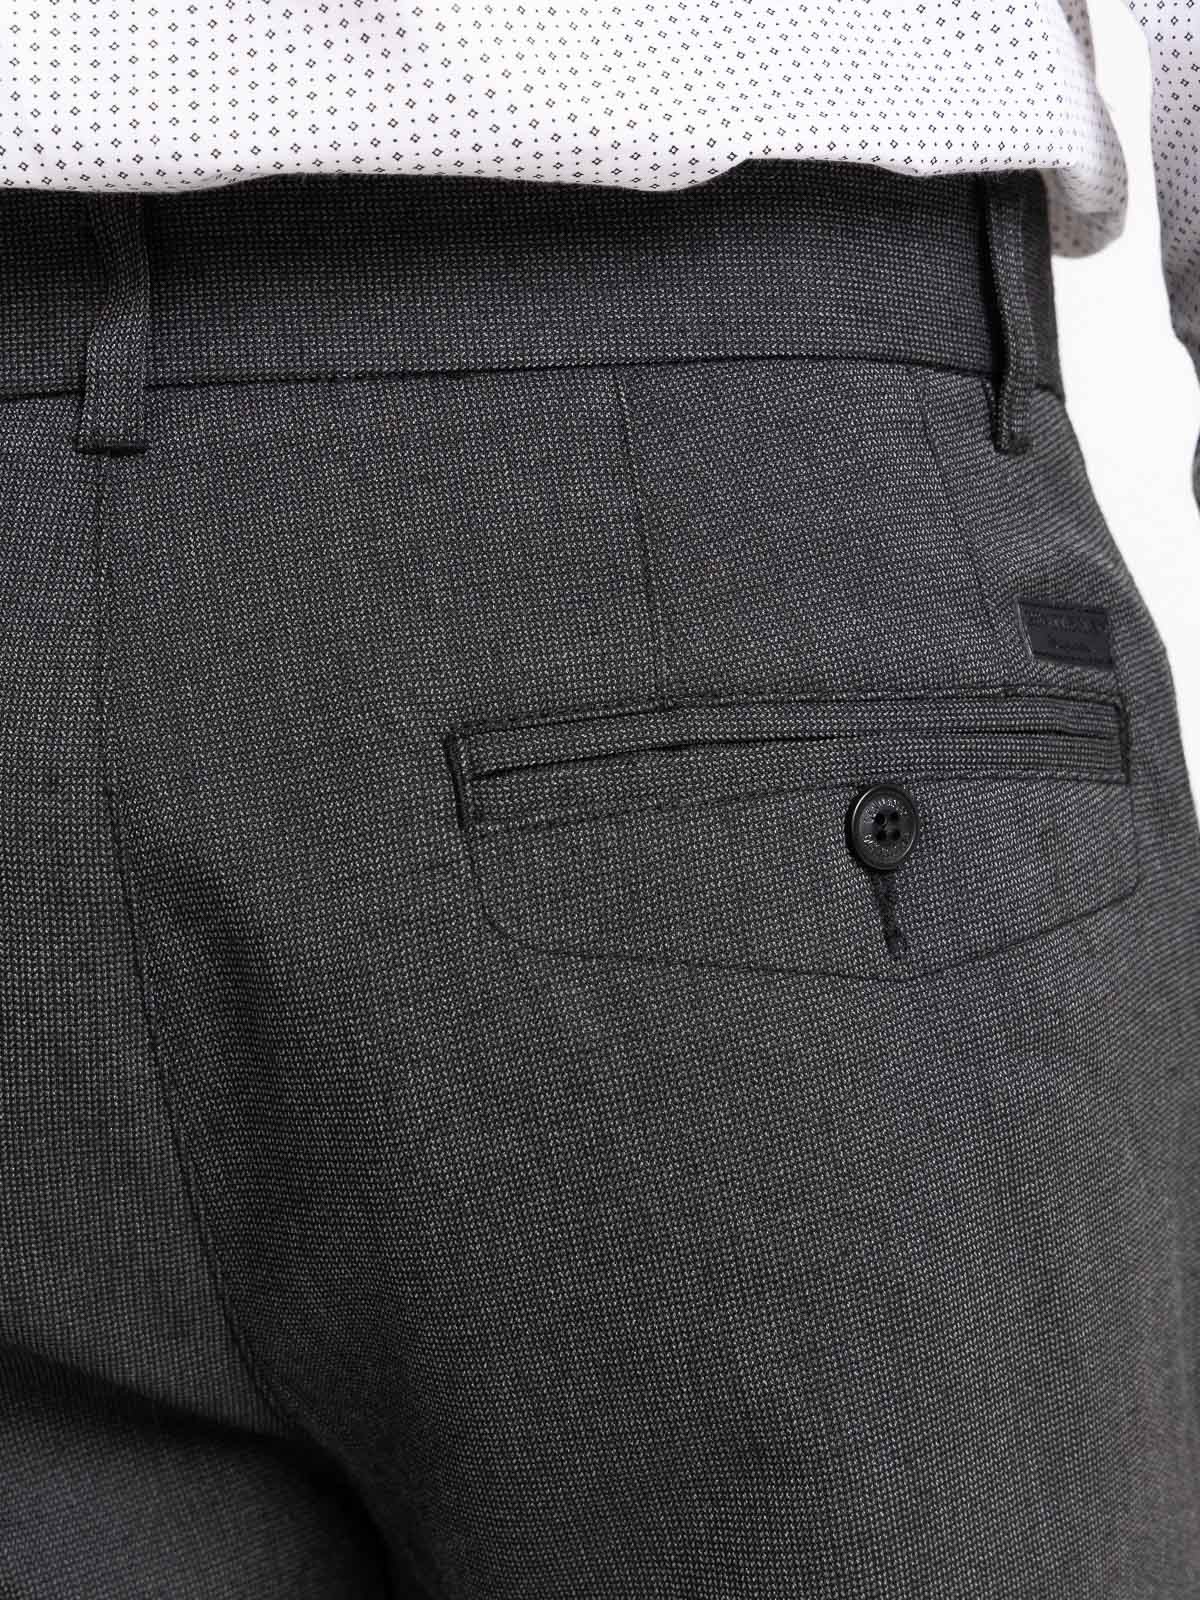 Pantalon gris anthracite chiné homme - DistriCenter